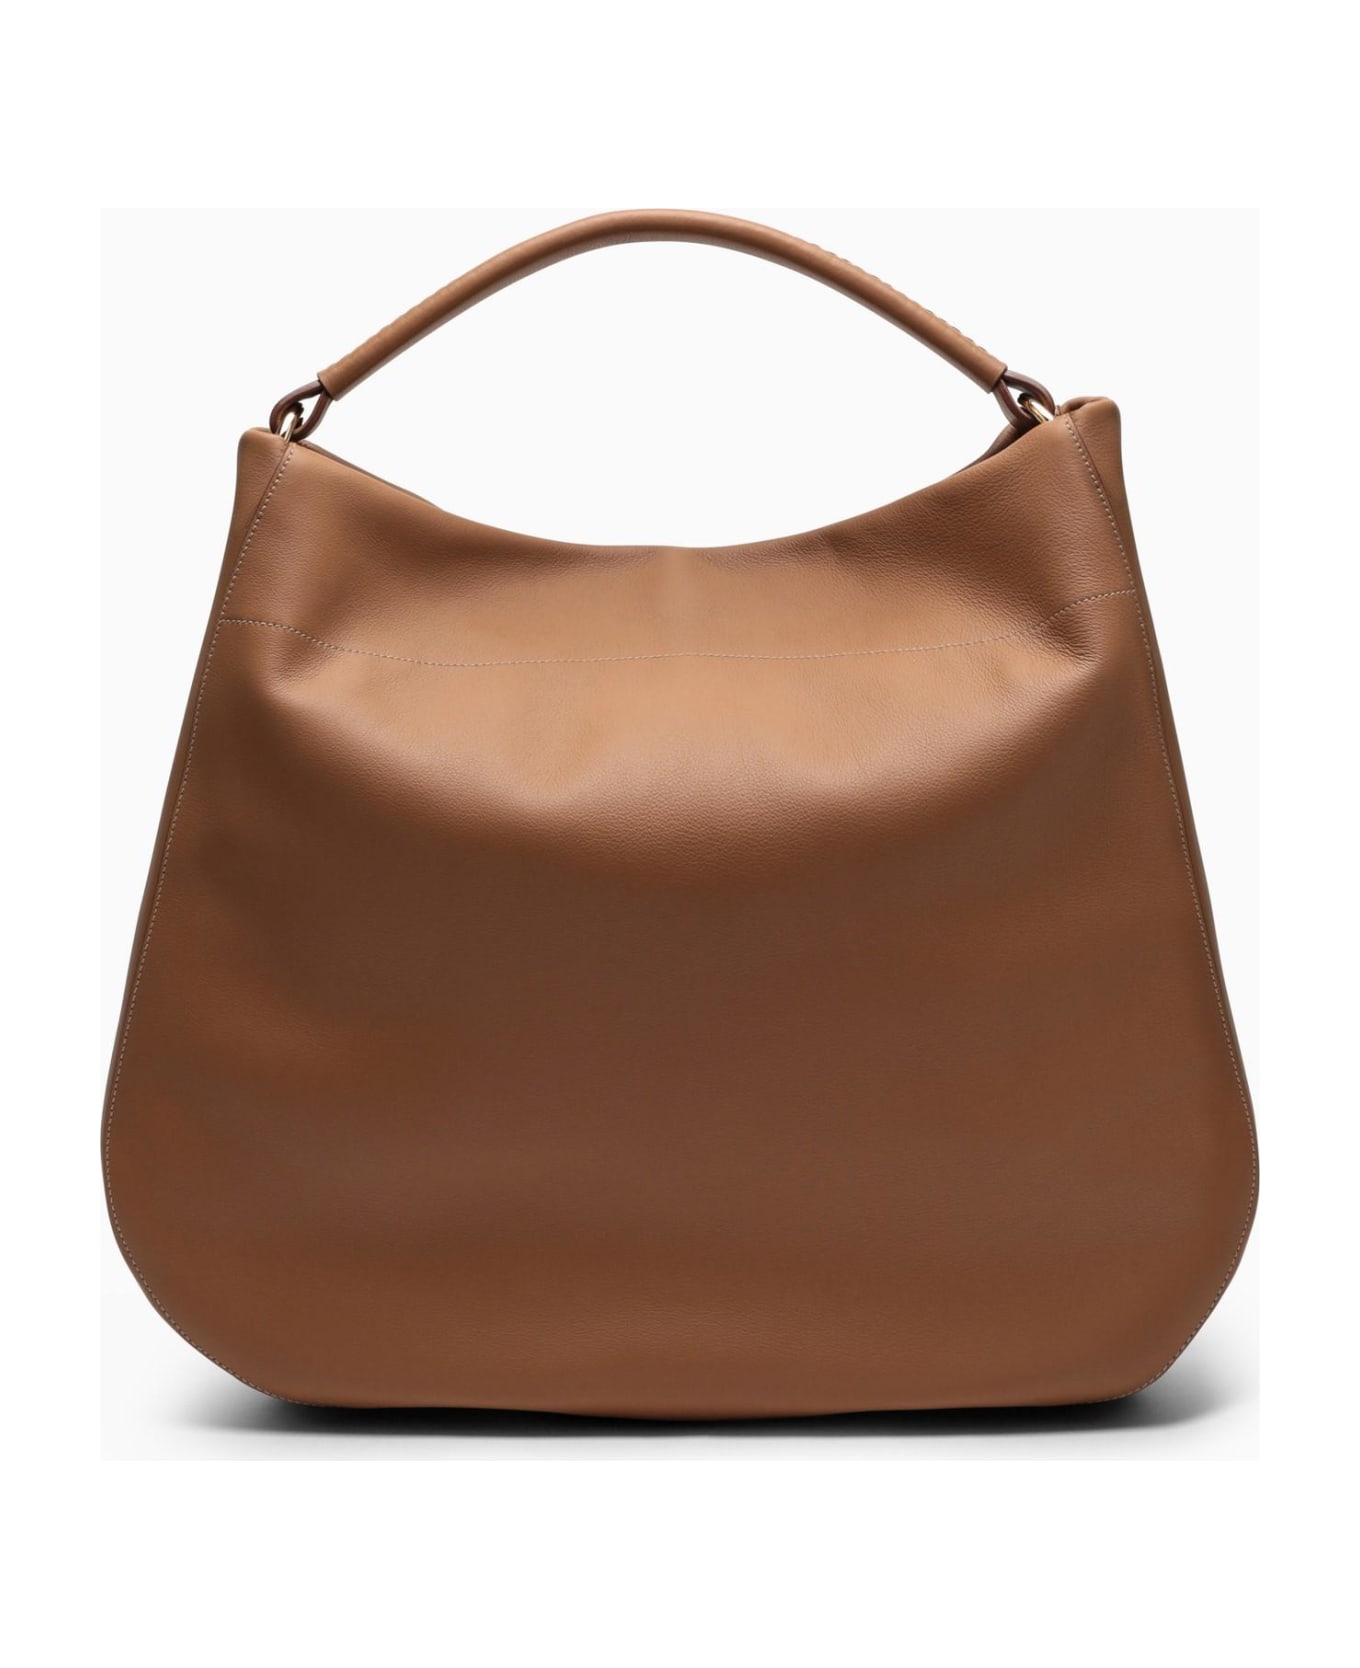 Prada Large Caramel-coloured Leather Shoulder Bag - CARAMEL 0 トートバッグ